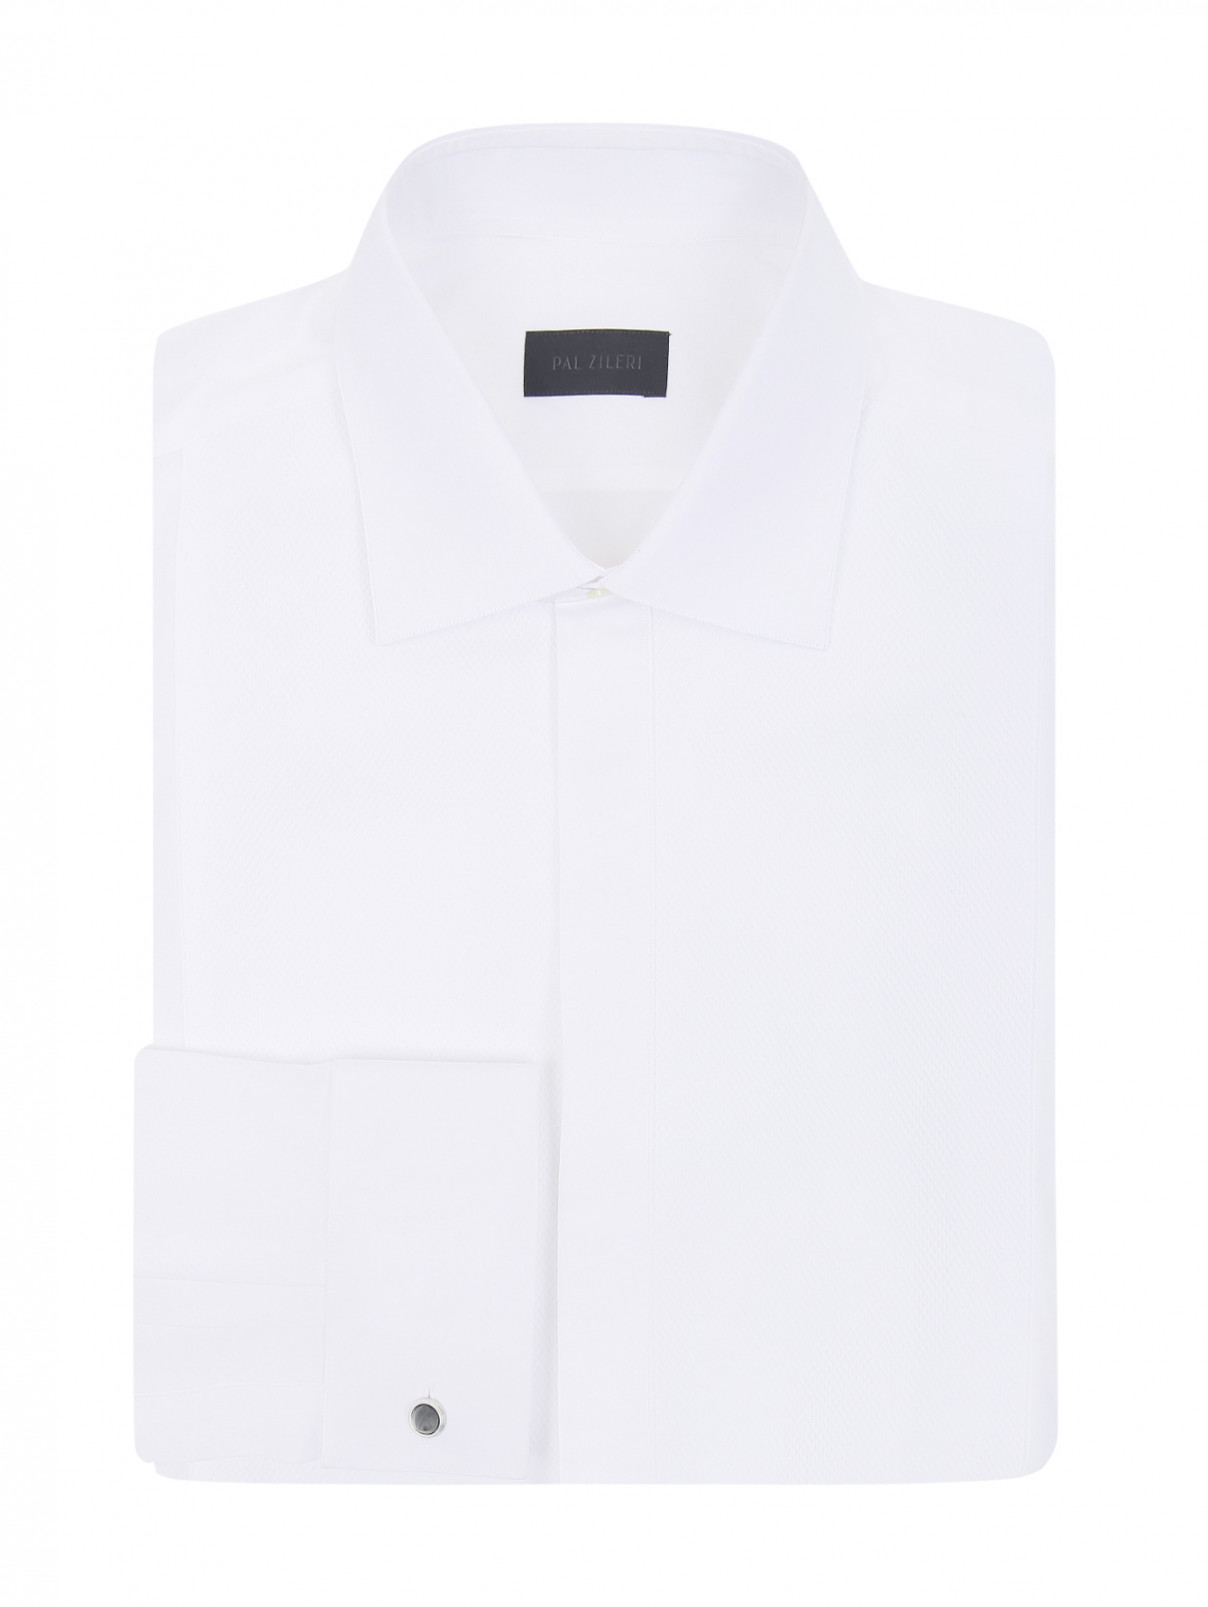 Рубашка из хлопка под запонки Pal Zileri  –  Общий вид  – Цвет:  Белый